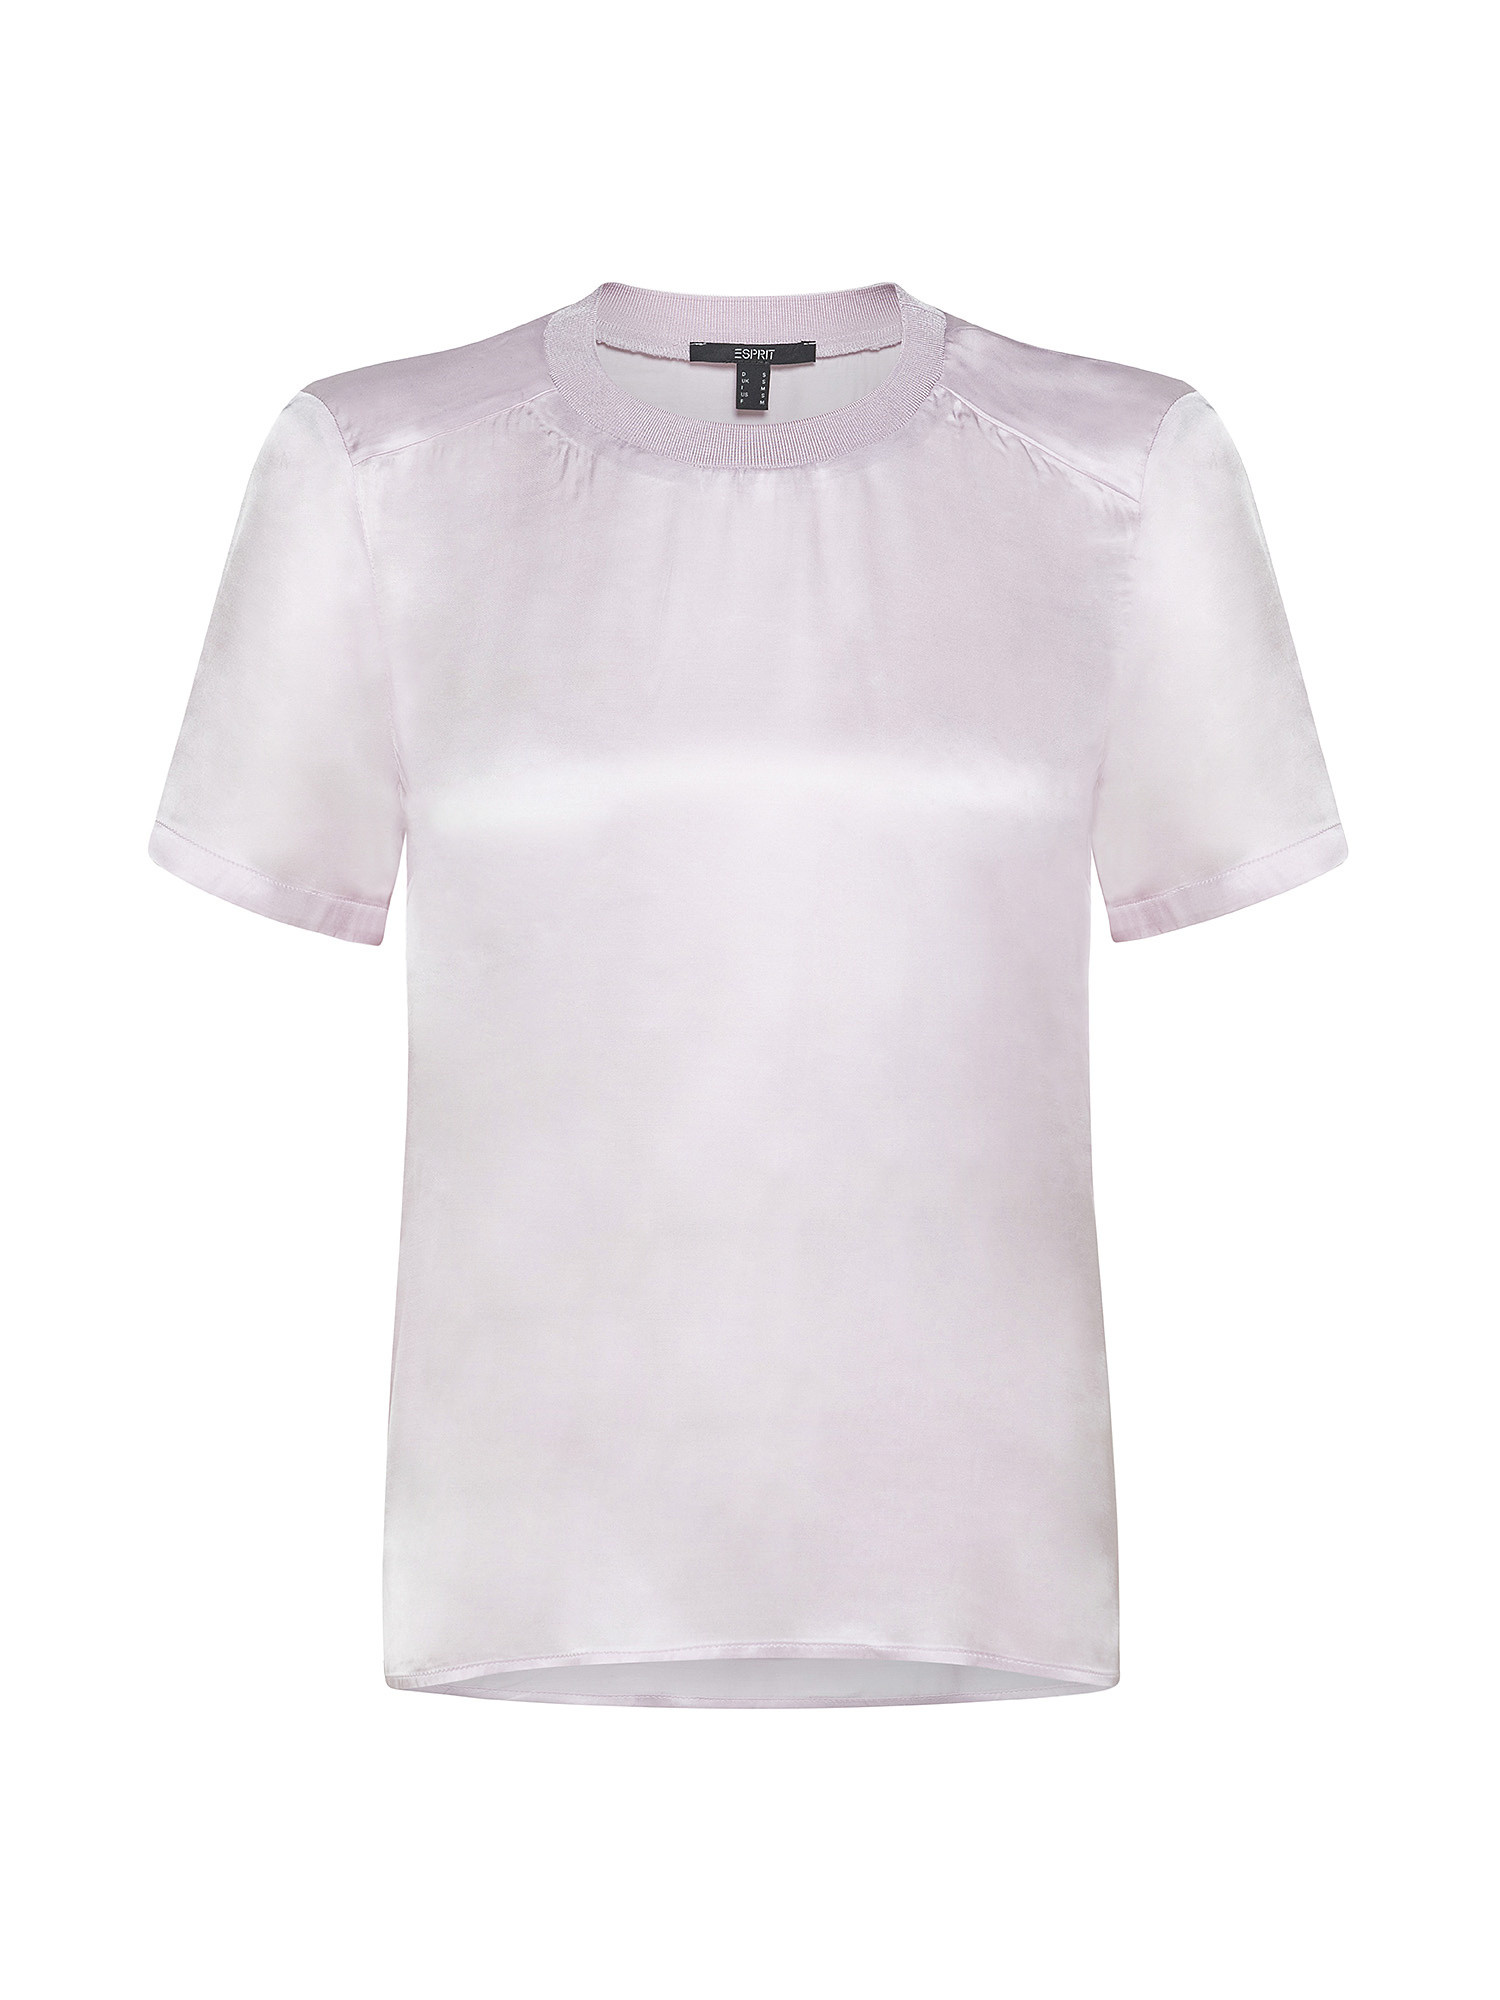 Short-sleeved silk-effect blouse, Light Pink, large image number 0